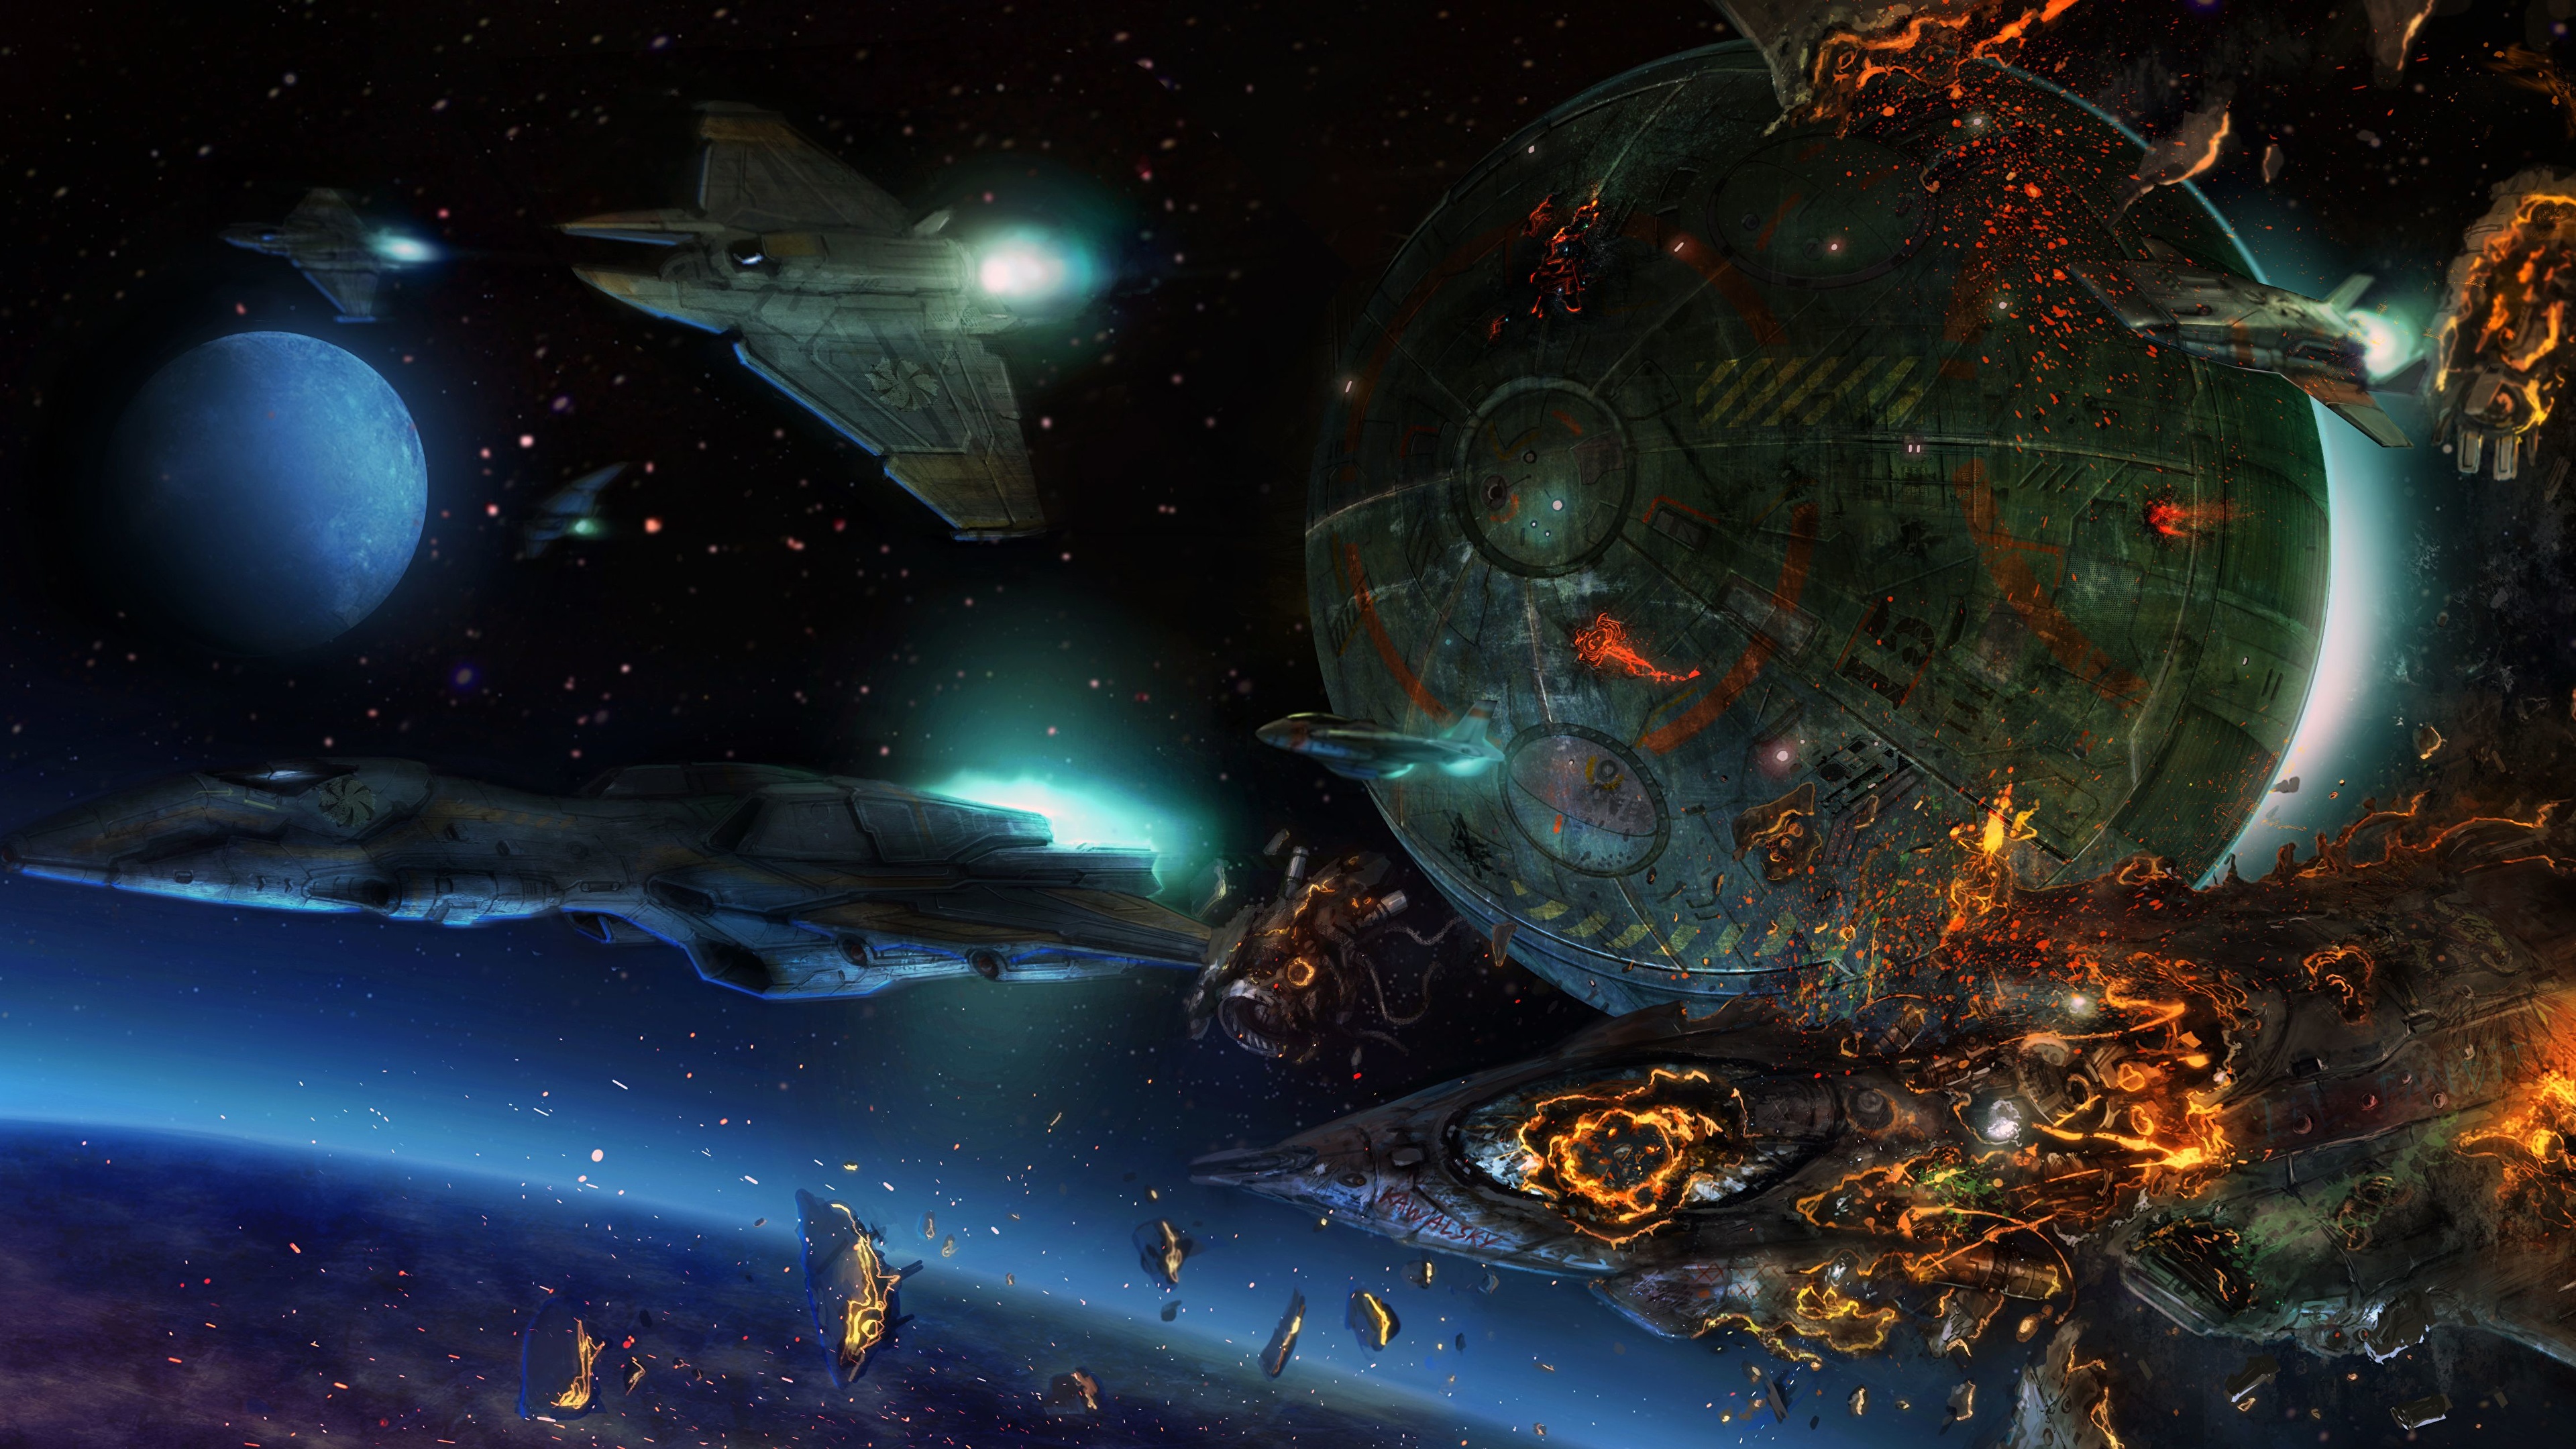 Обои космос планета игры StarCraft картинки на рабочий стол на тему Космос - скачать бесплатно